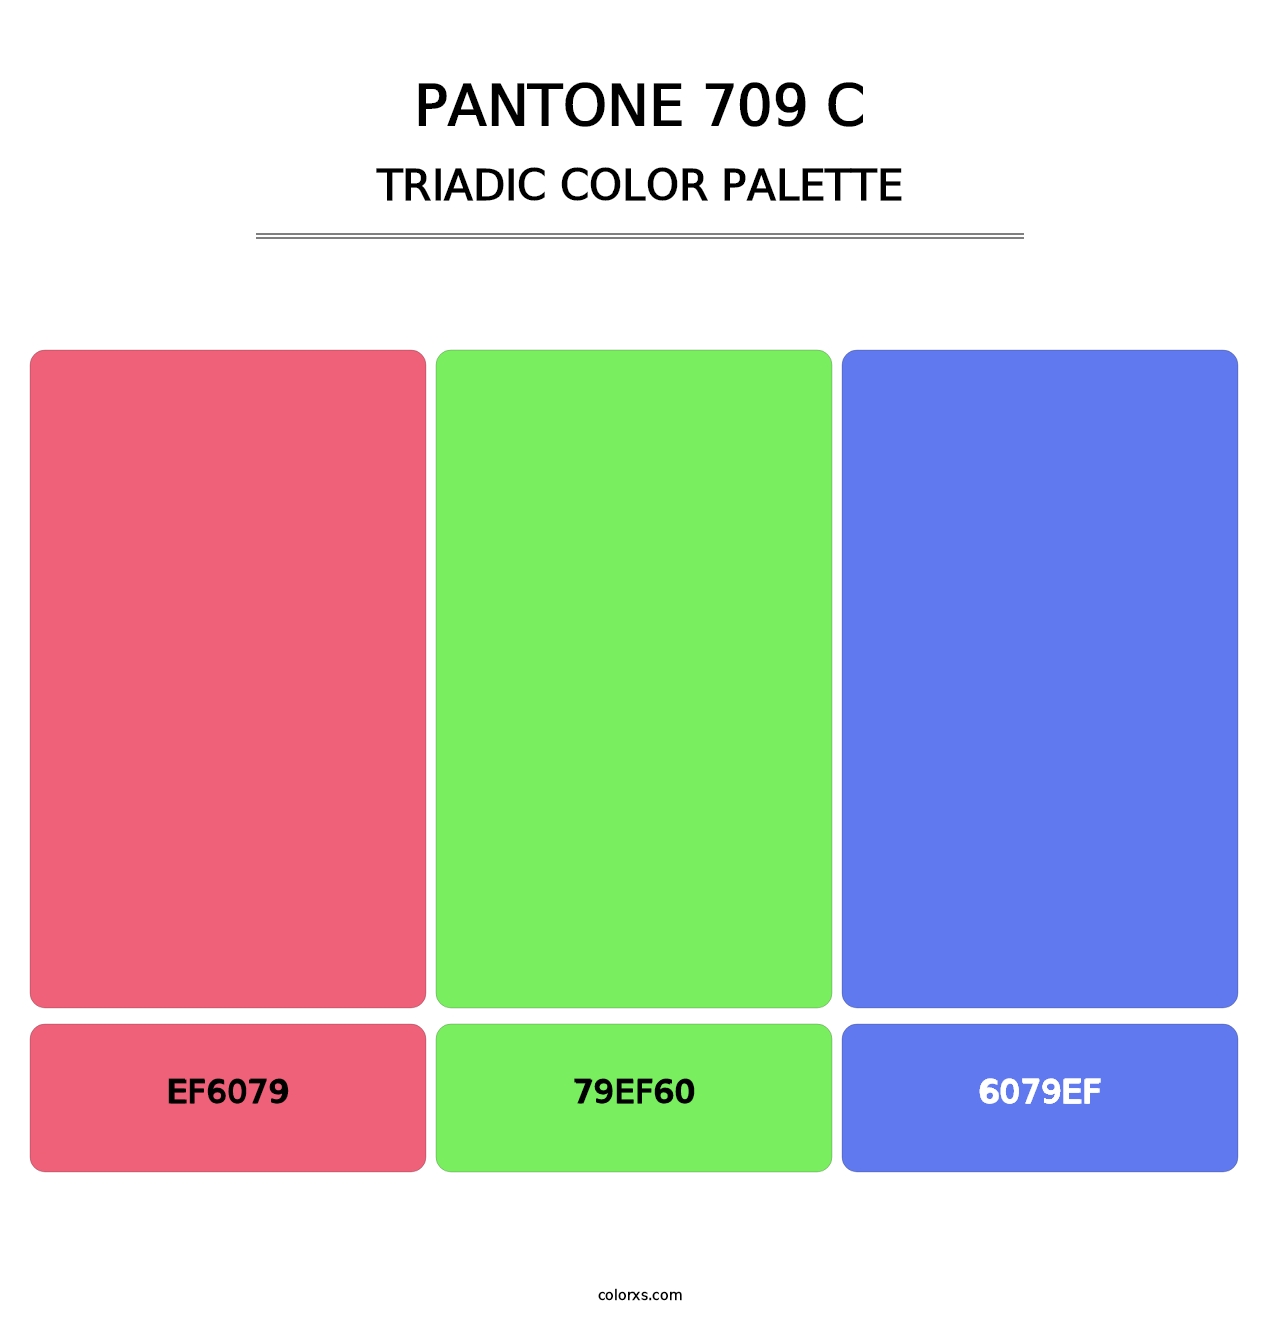 PANTONE 709 C - Triadic Color Palette